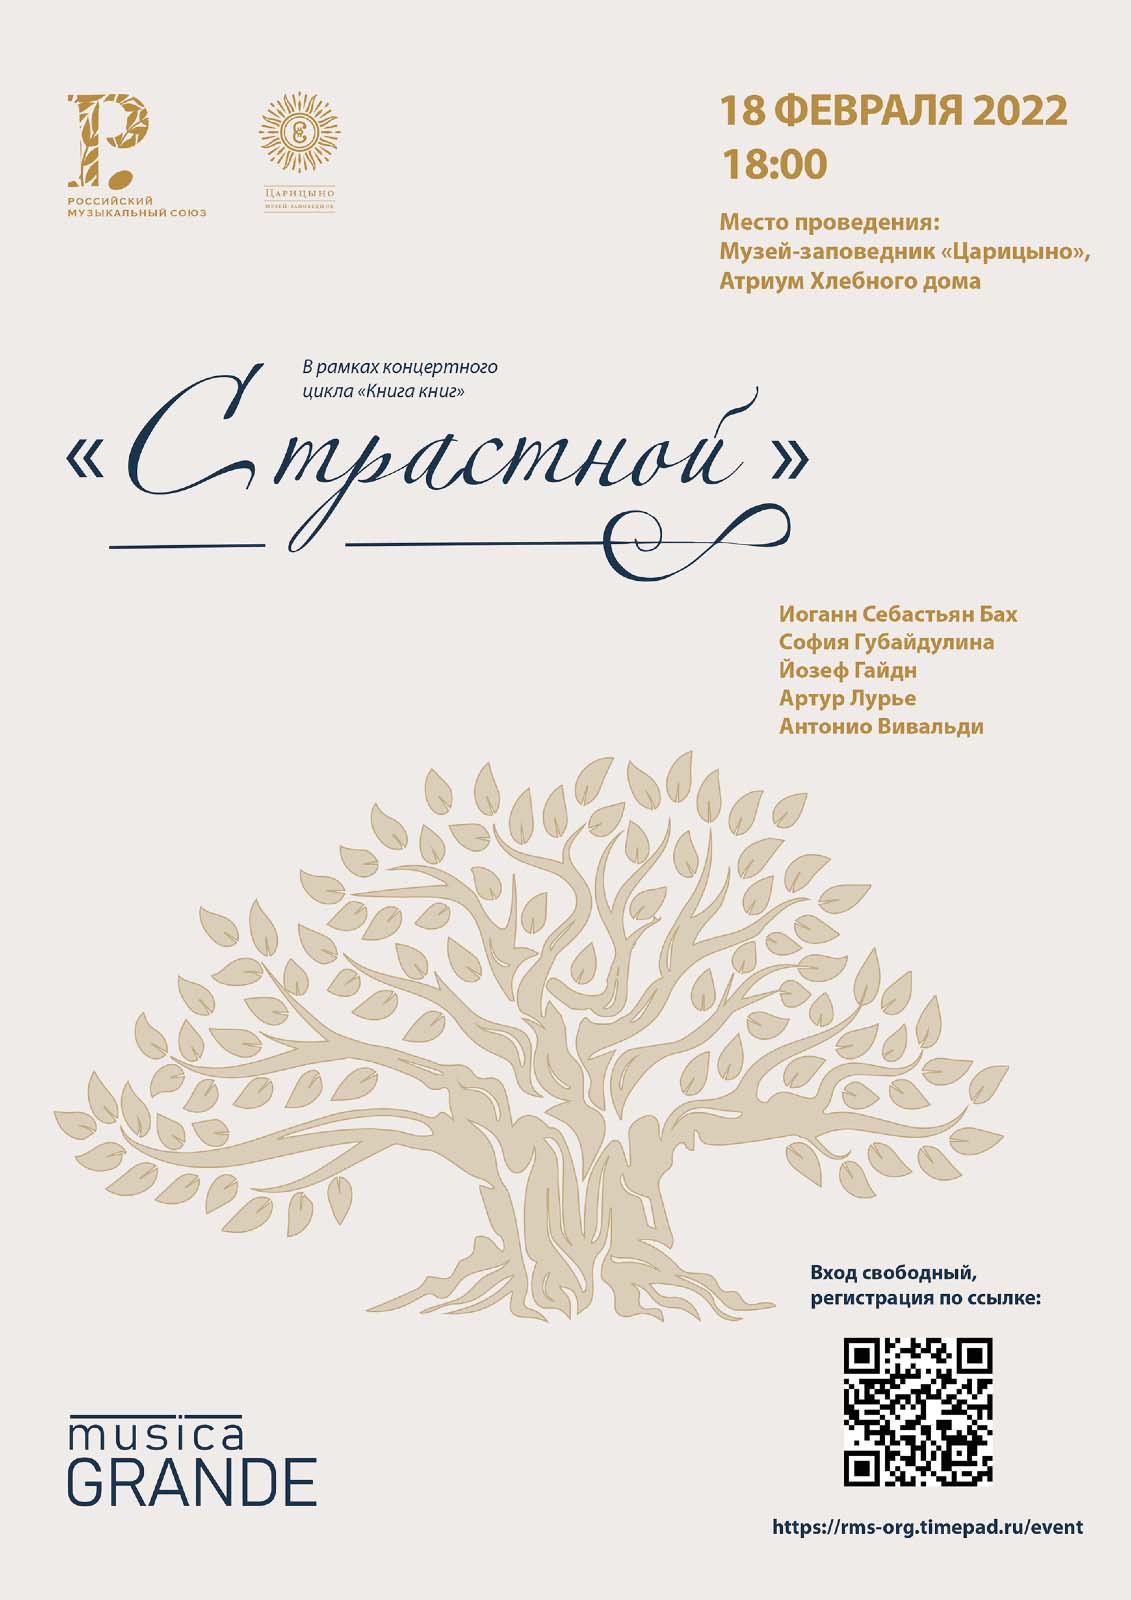 Российский музыкальный союз и «Царицыно»  представляют четвертый концерт цикла «Книга книг»